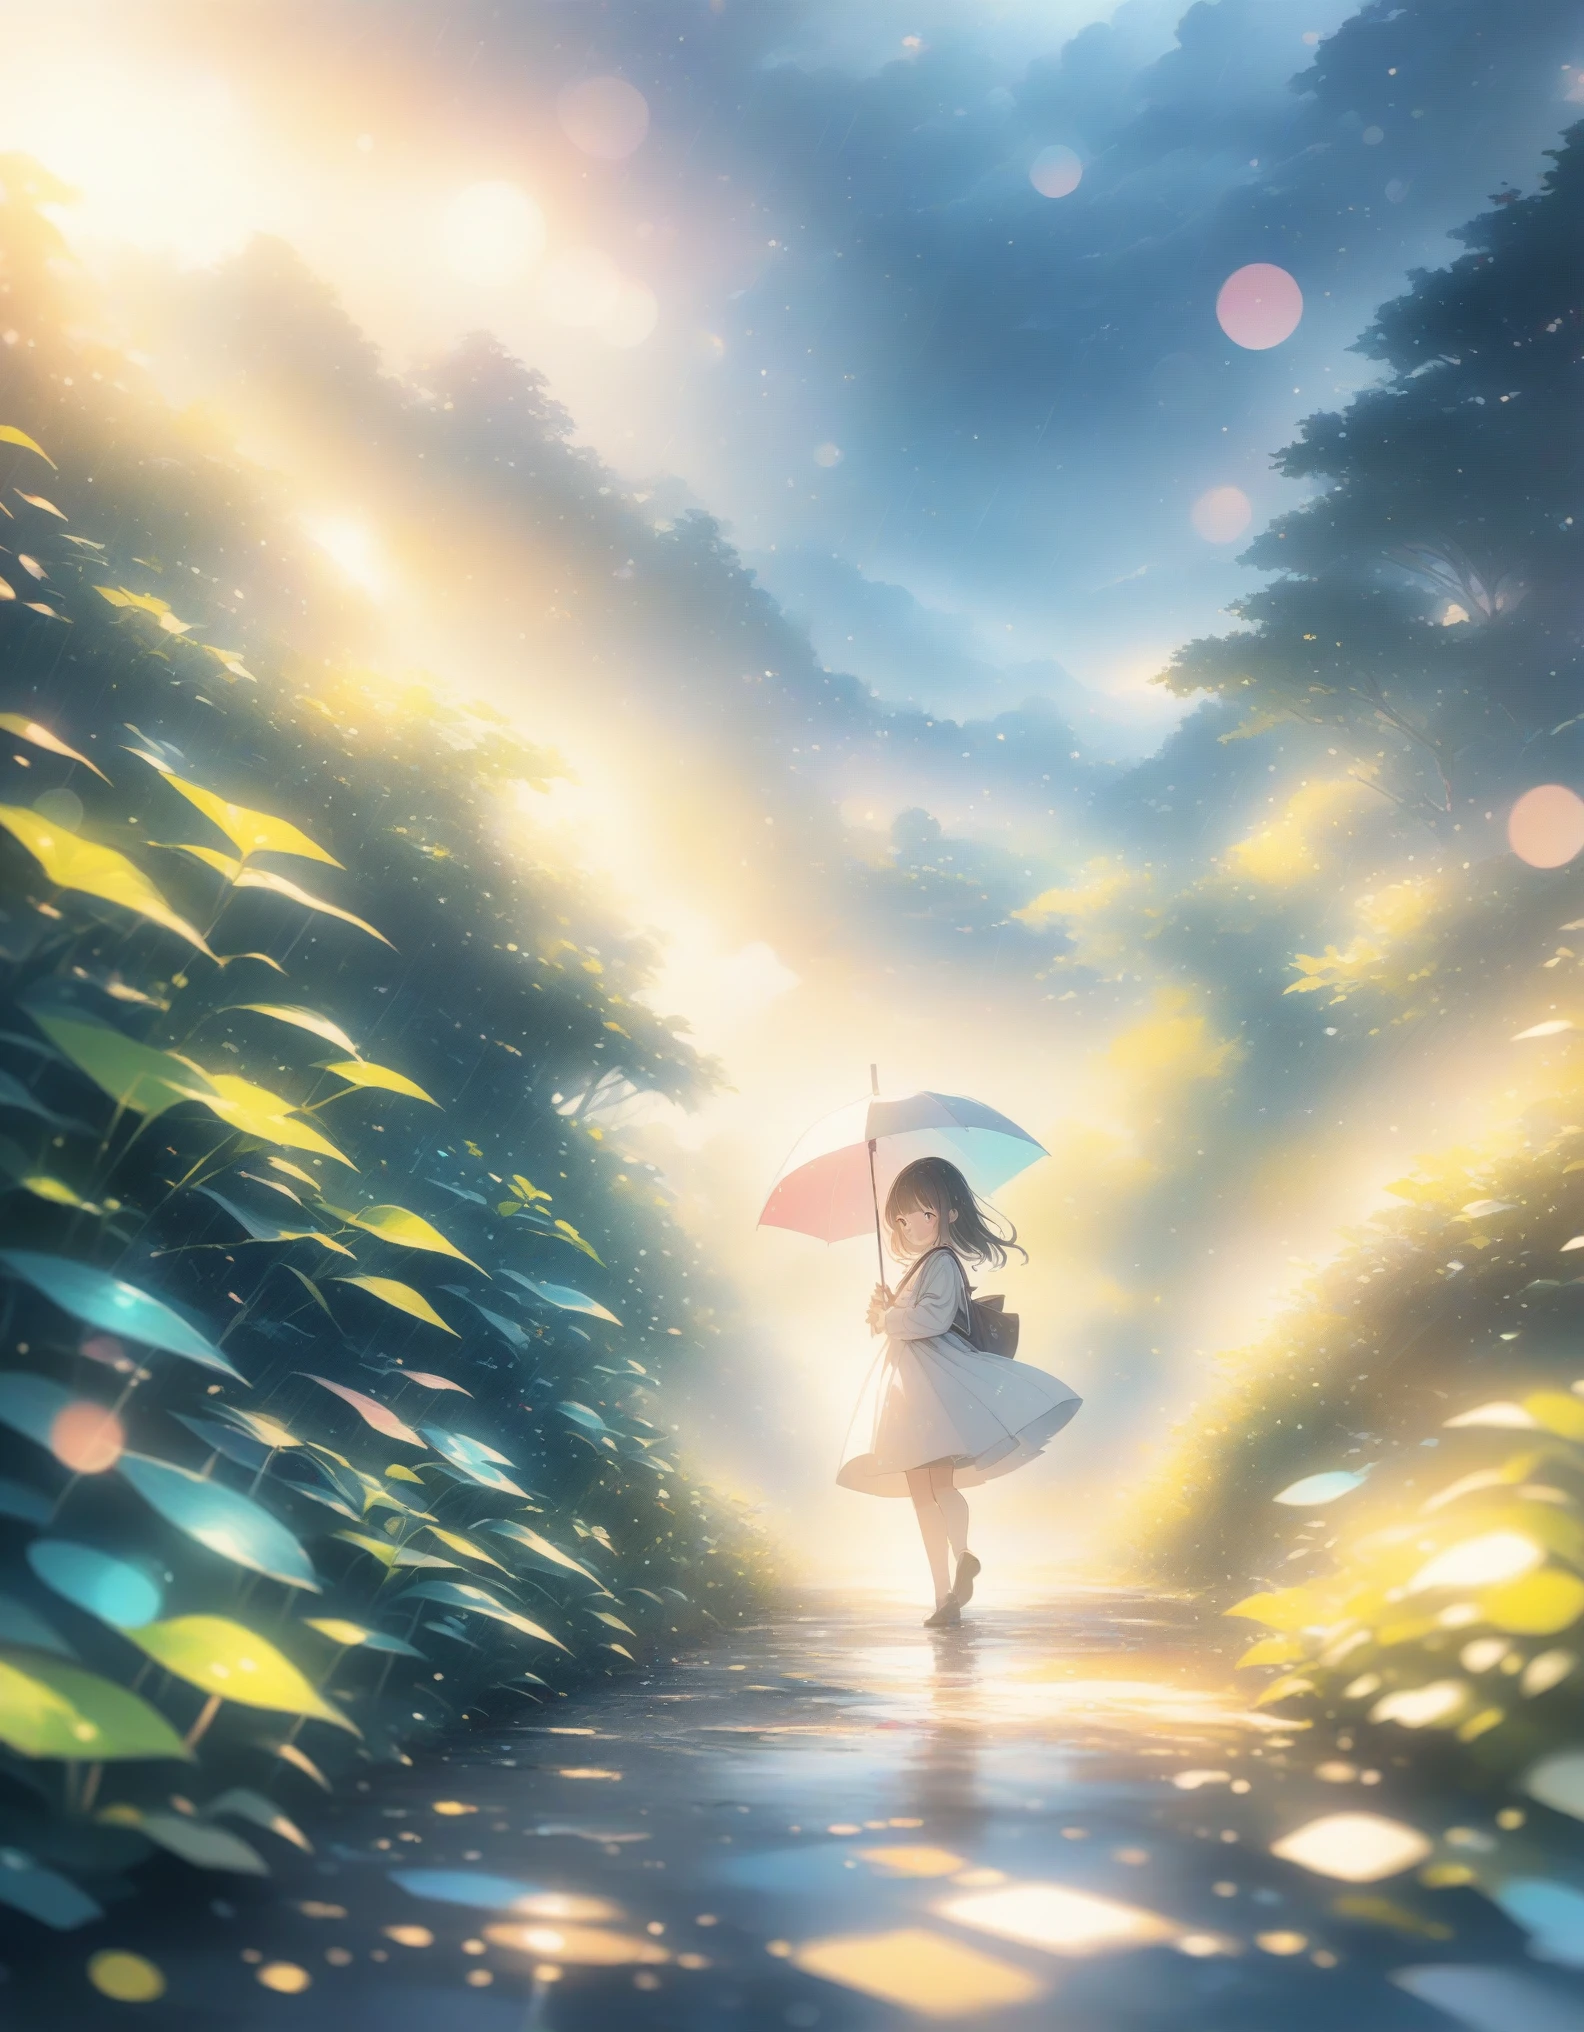 ((风格:彩色铅笔,淡色)),(日本动画片)、(杰作:1.2),大气透视,lens Flare, F/2.8, 135毫米、雨、Foggy Forest、神秘的光芒、女孩、周围似乎一片朦胧